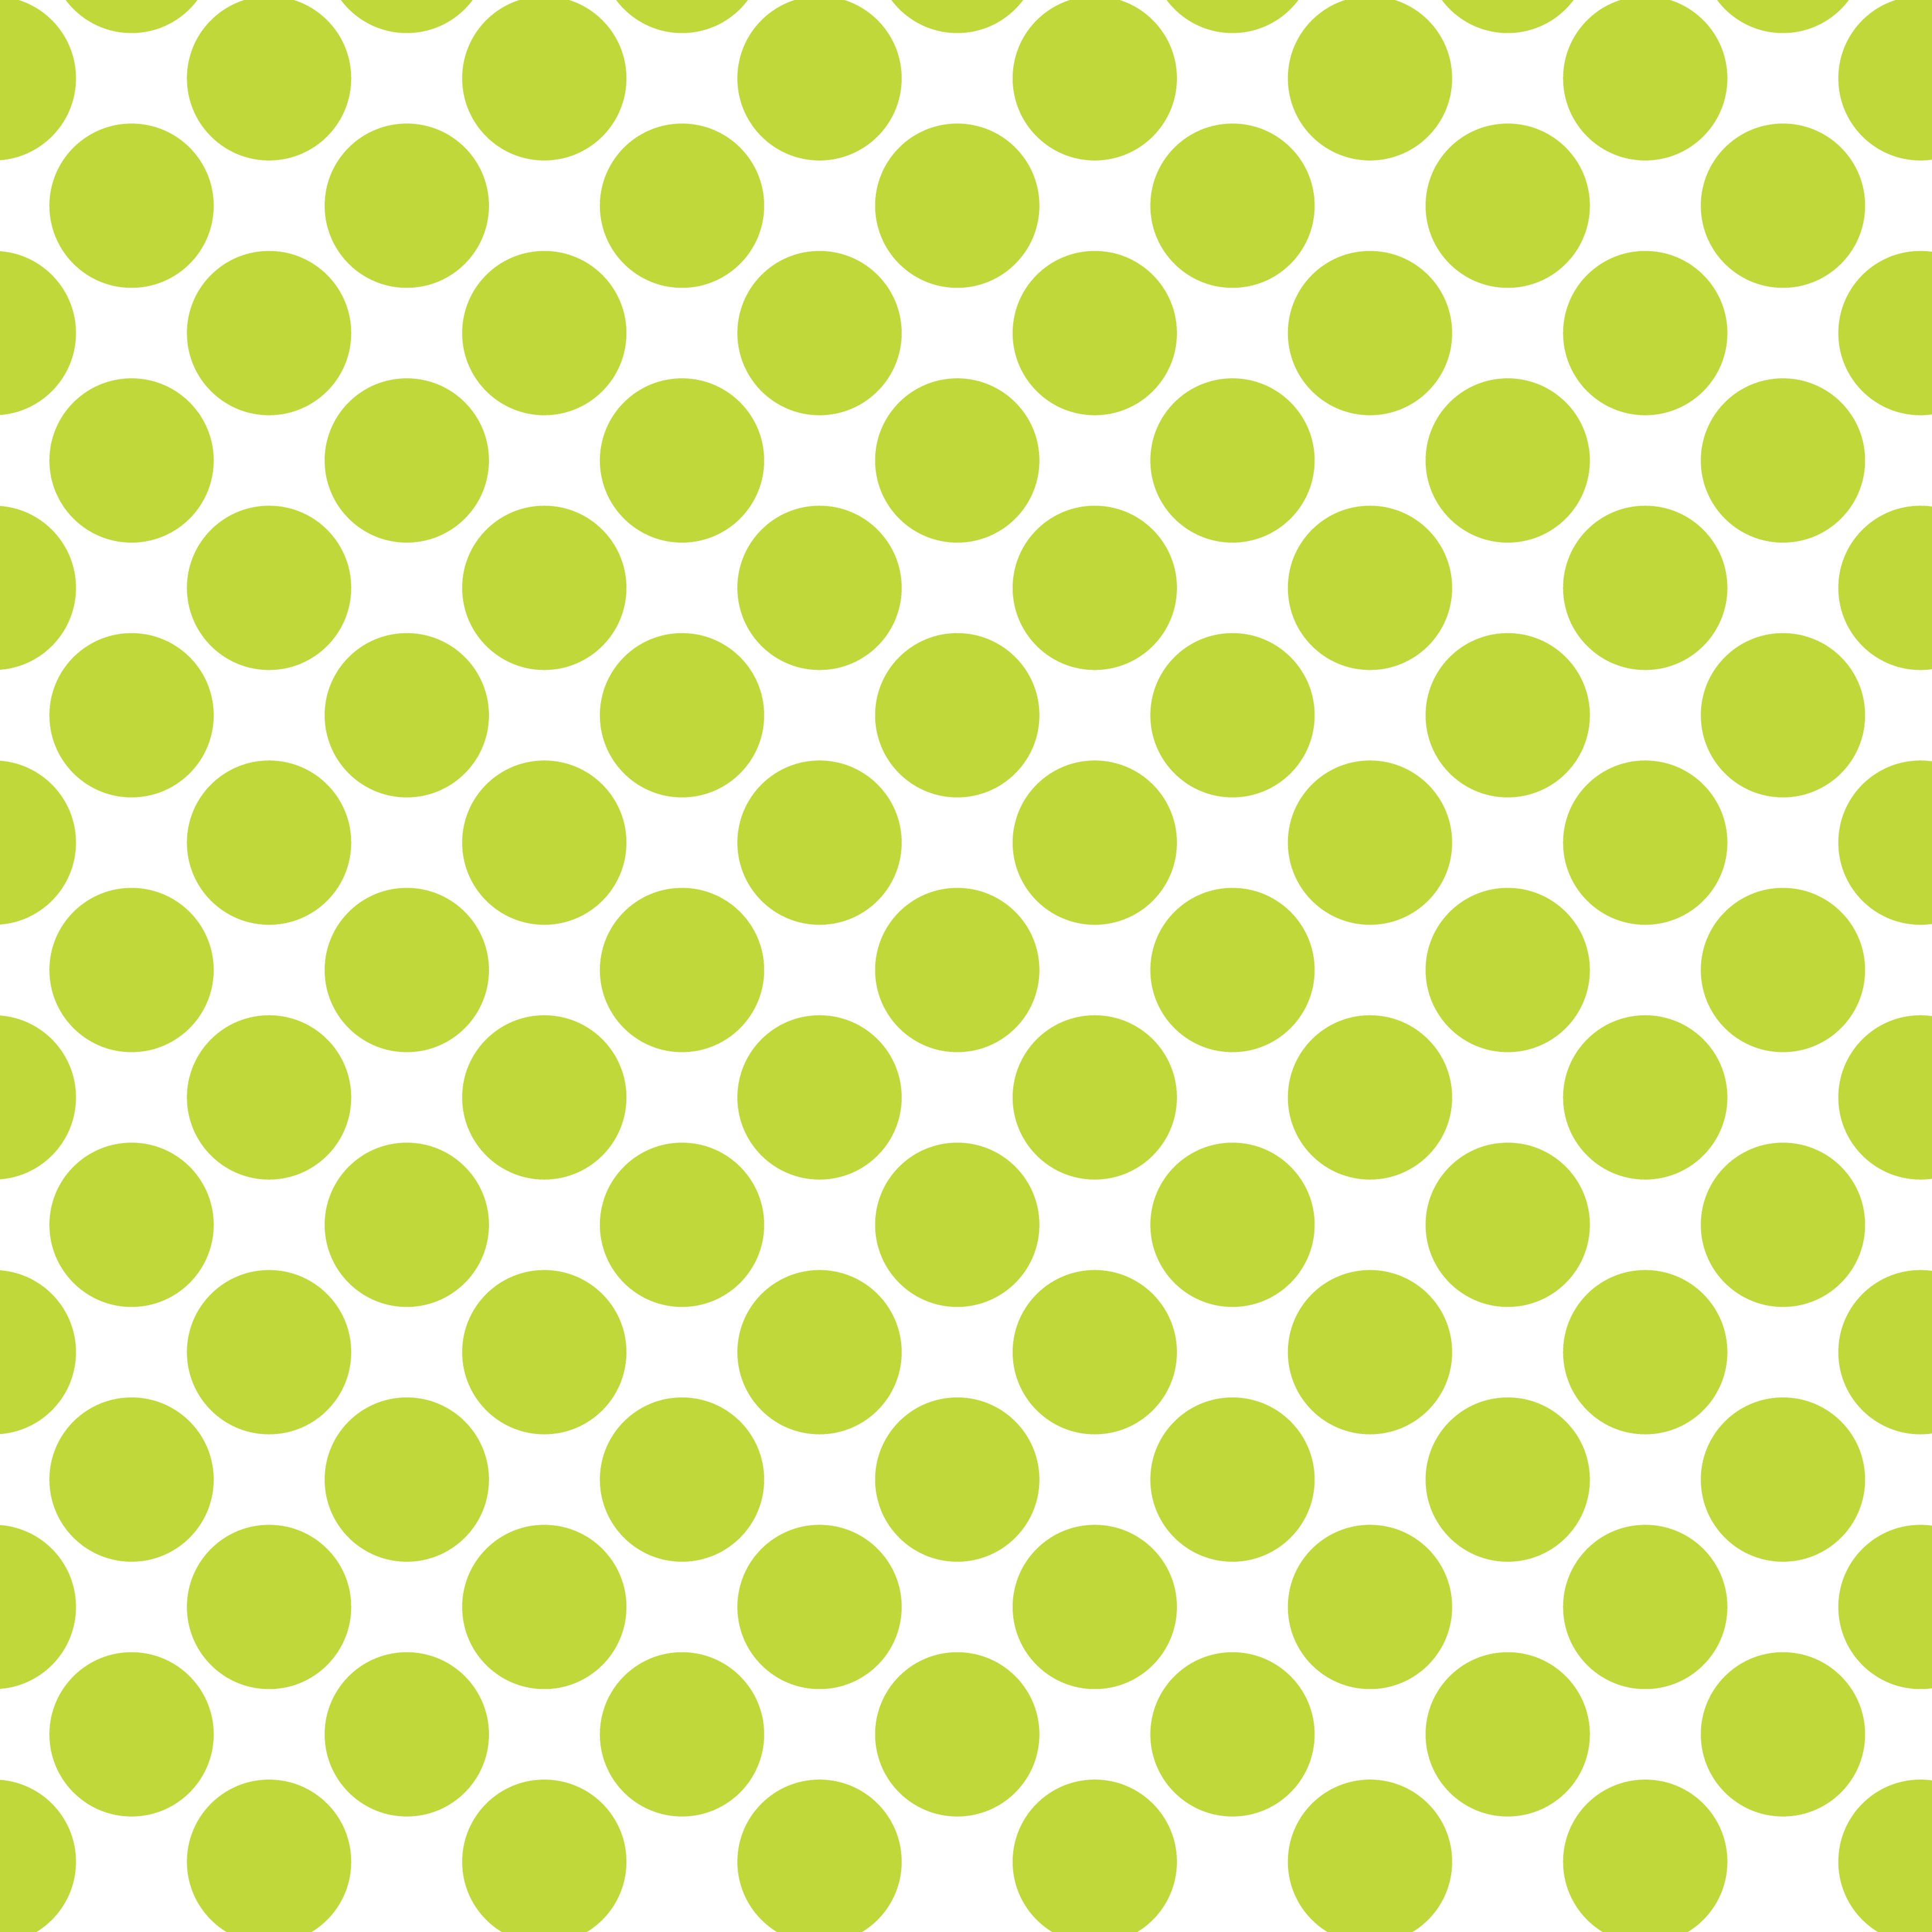 Polka Dot 1 cm Beyaz - Yeşil Sarı Puantiye Dekoratif Baskı Kumaş